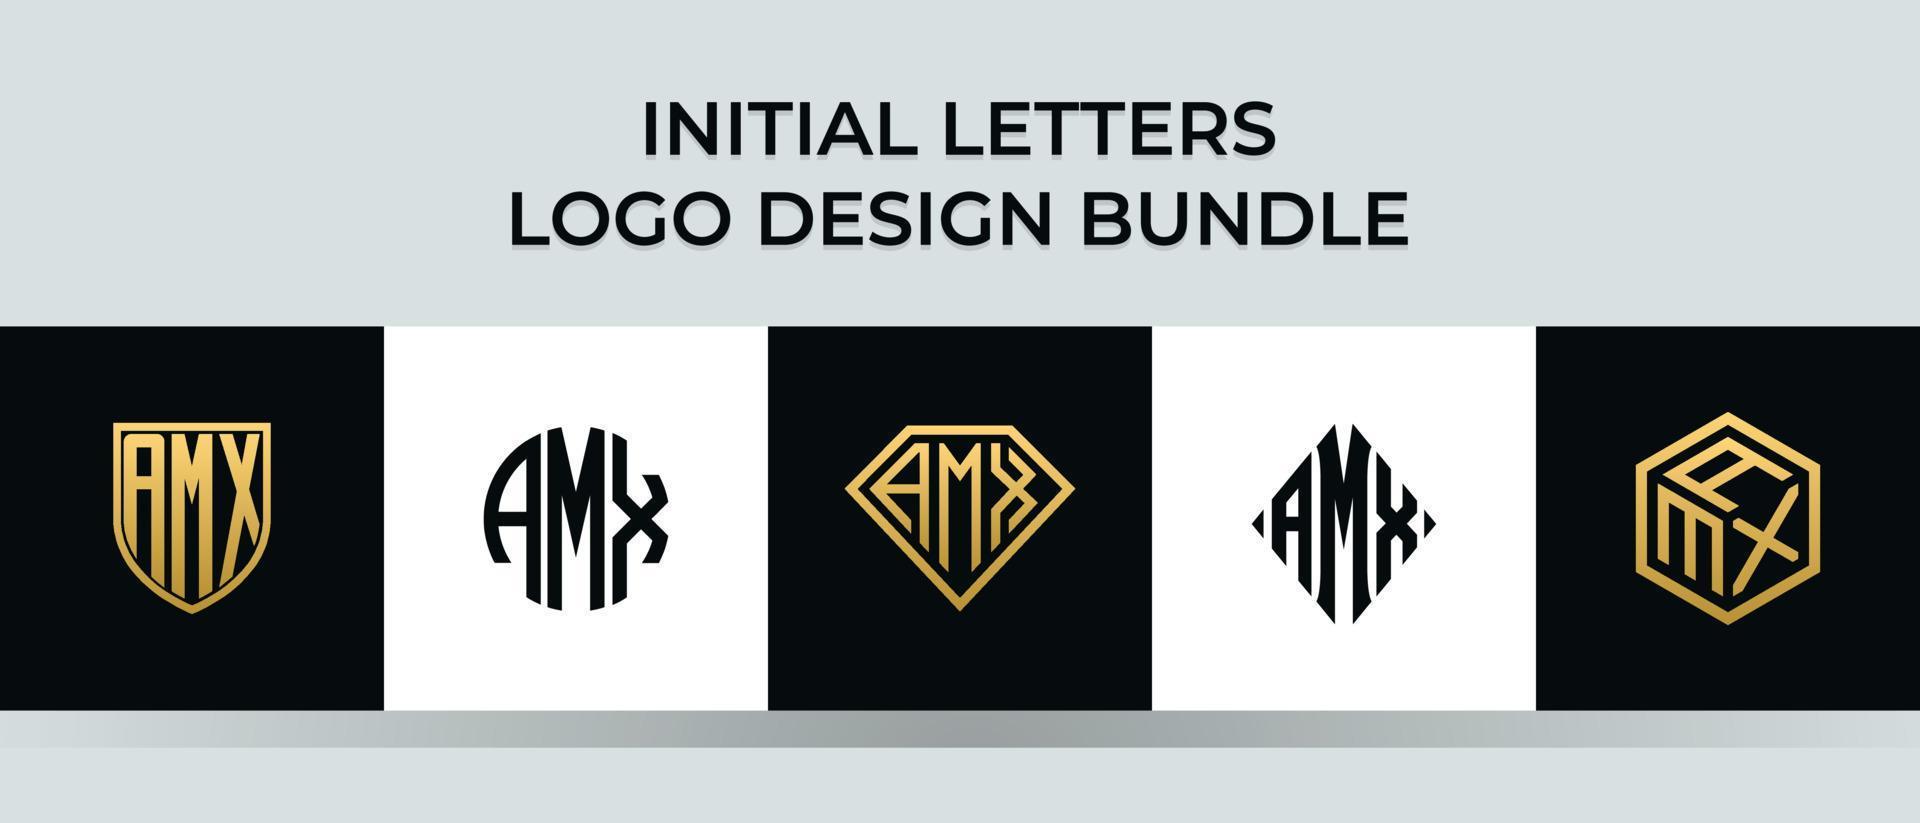 Initial letters AMX logo designs Bundle vector